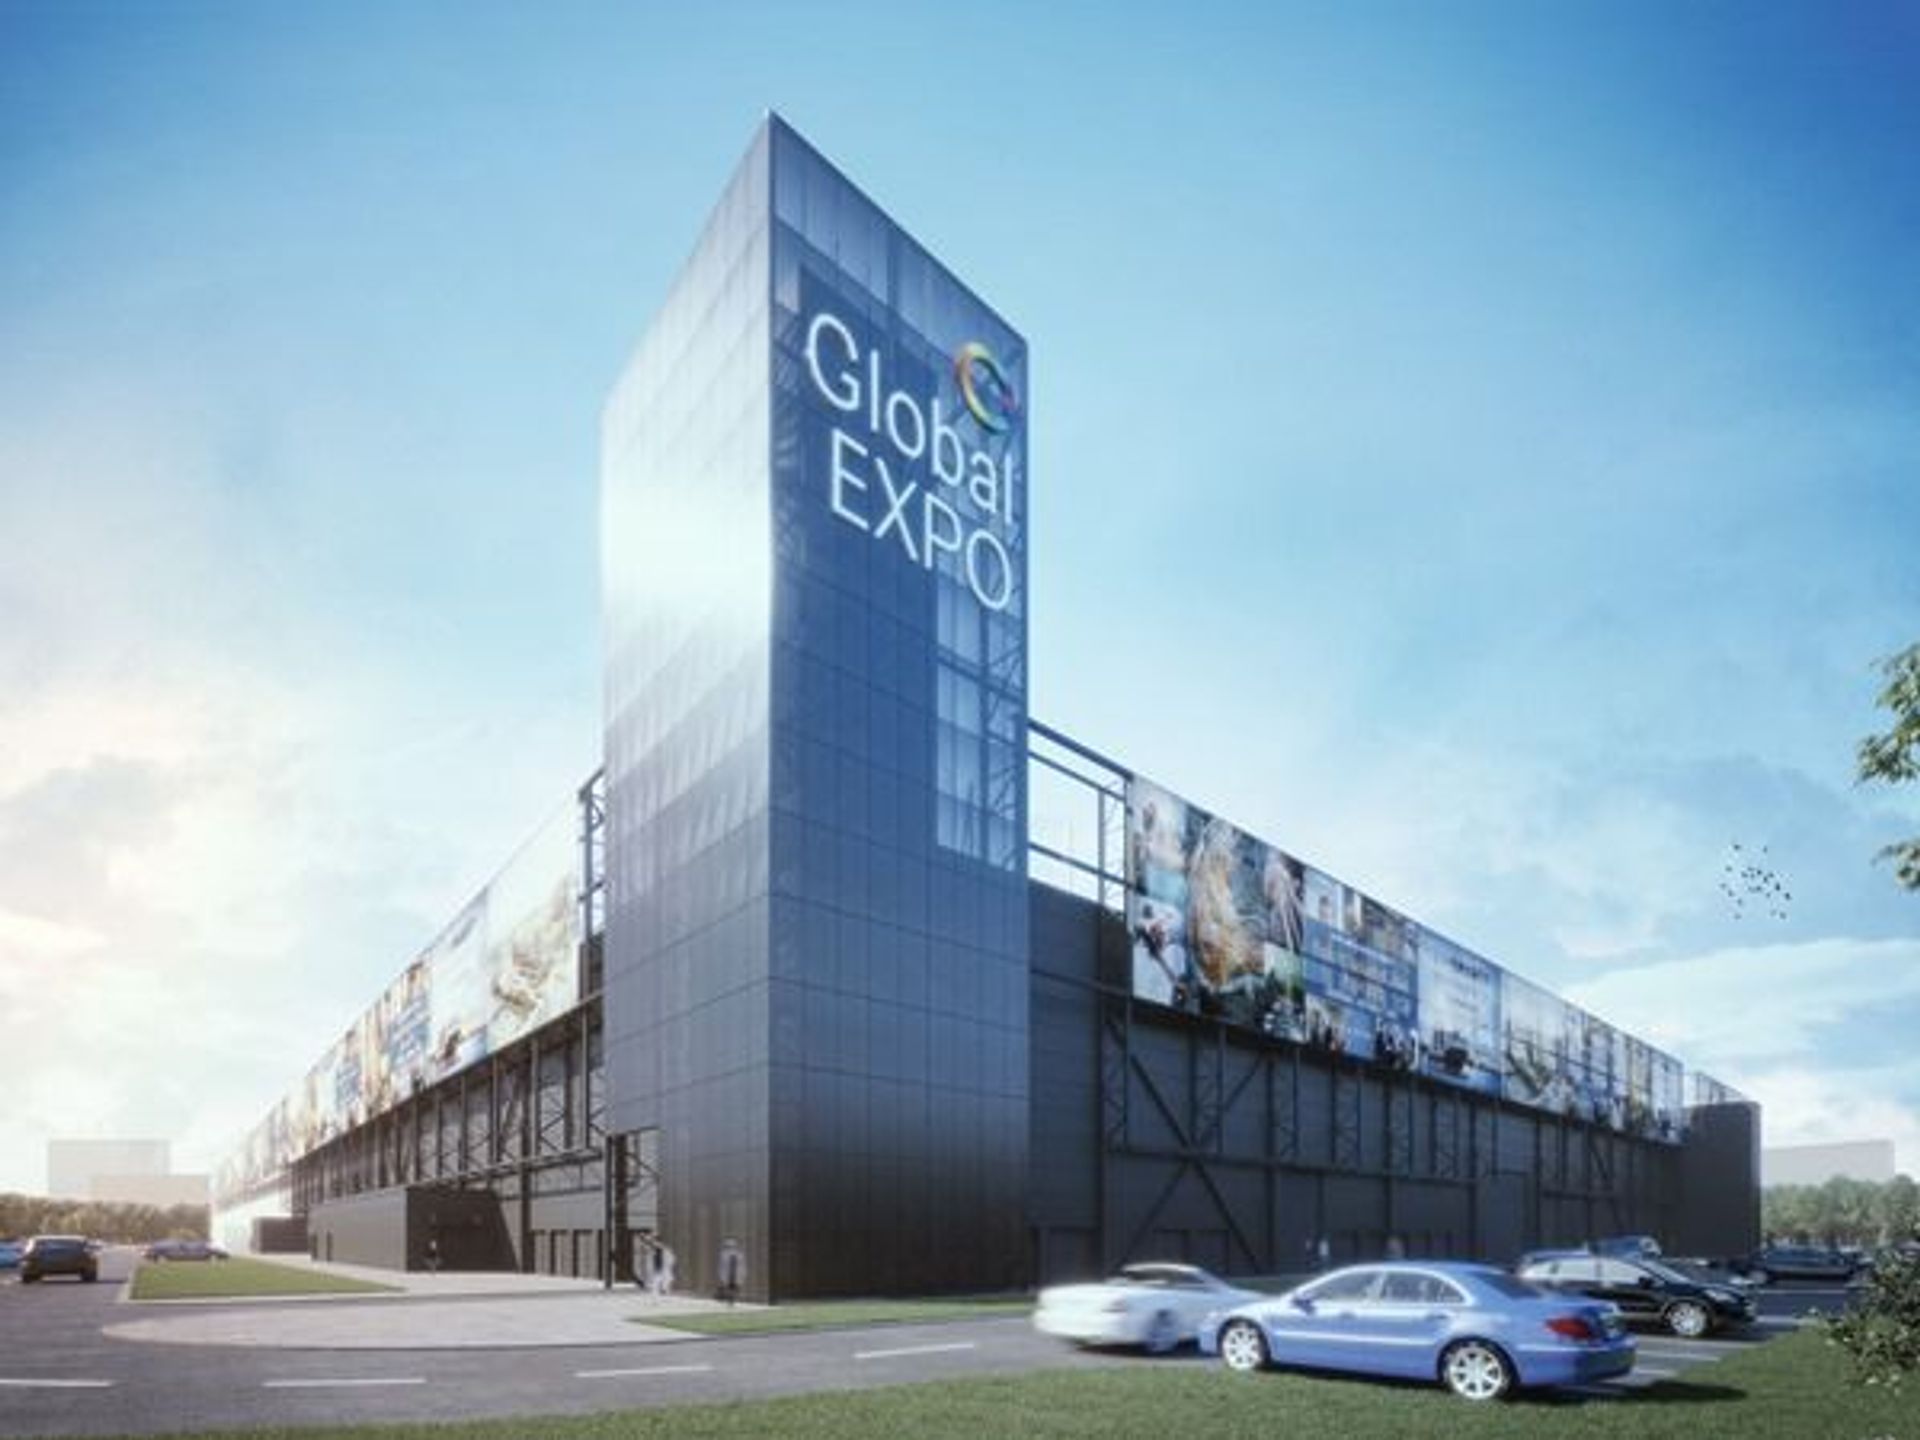  Na terenie Portu Żerańskiego w Warszawie rośnie kompleks z Centrum Targowo-Wystawienniczym Global Expo